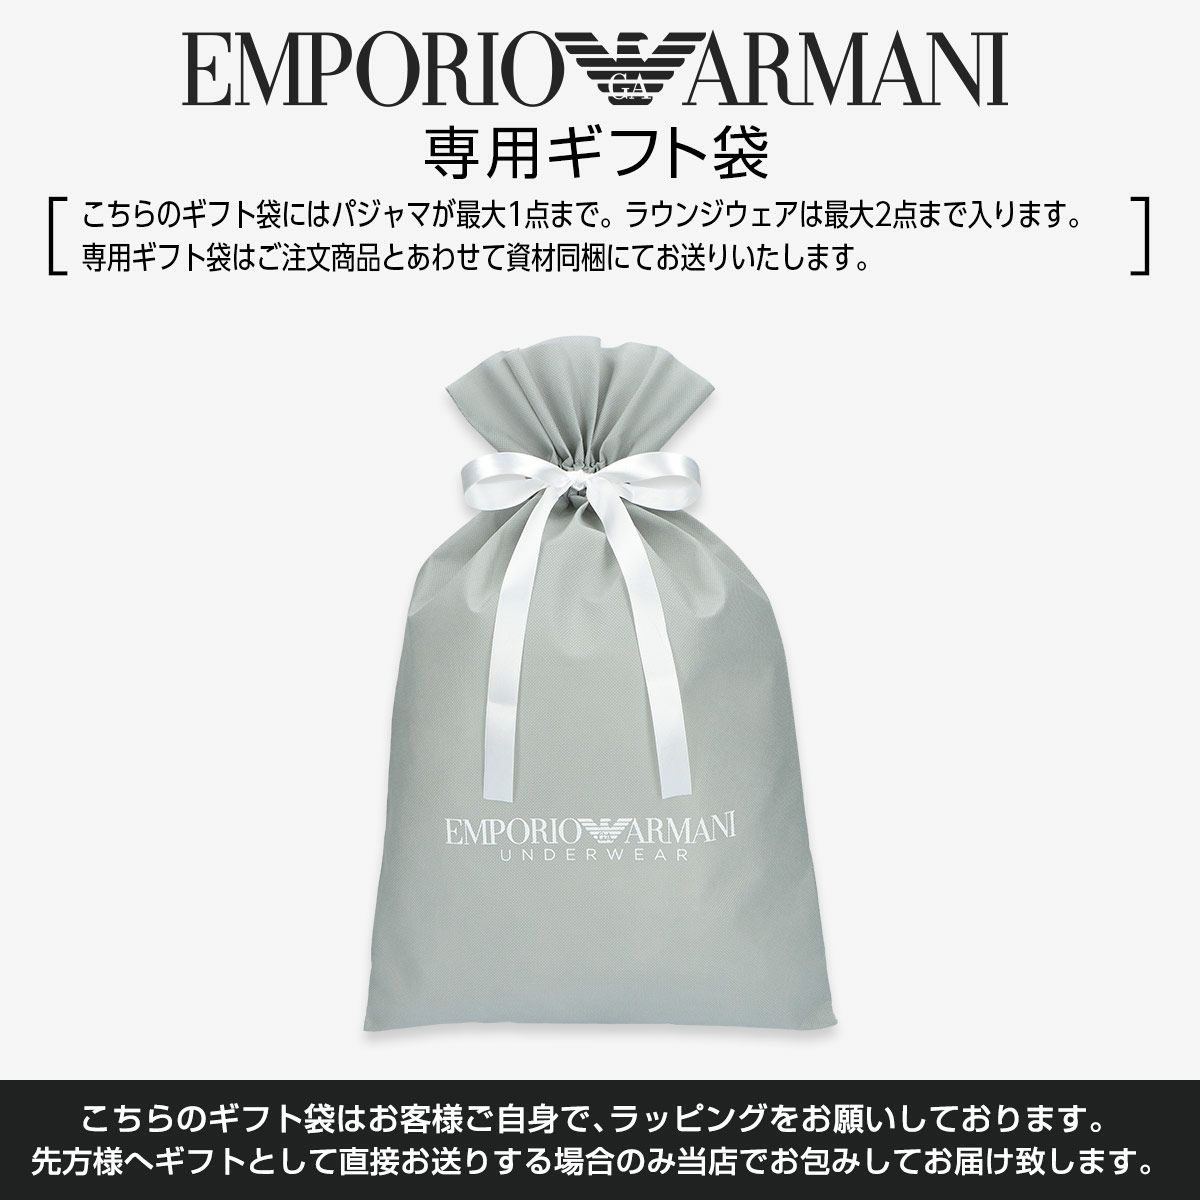 EMPORIO ARMANI エンポリオ アルマーニ イーグルジャカード パジャマ 上下セット 日本サイズ メンズ 54222003